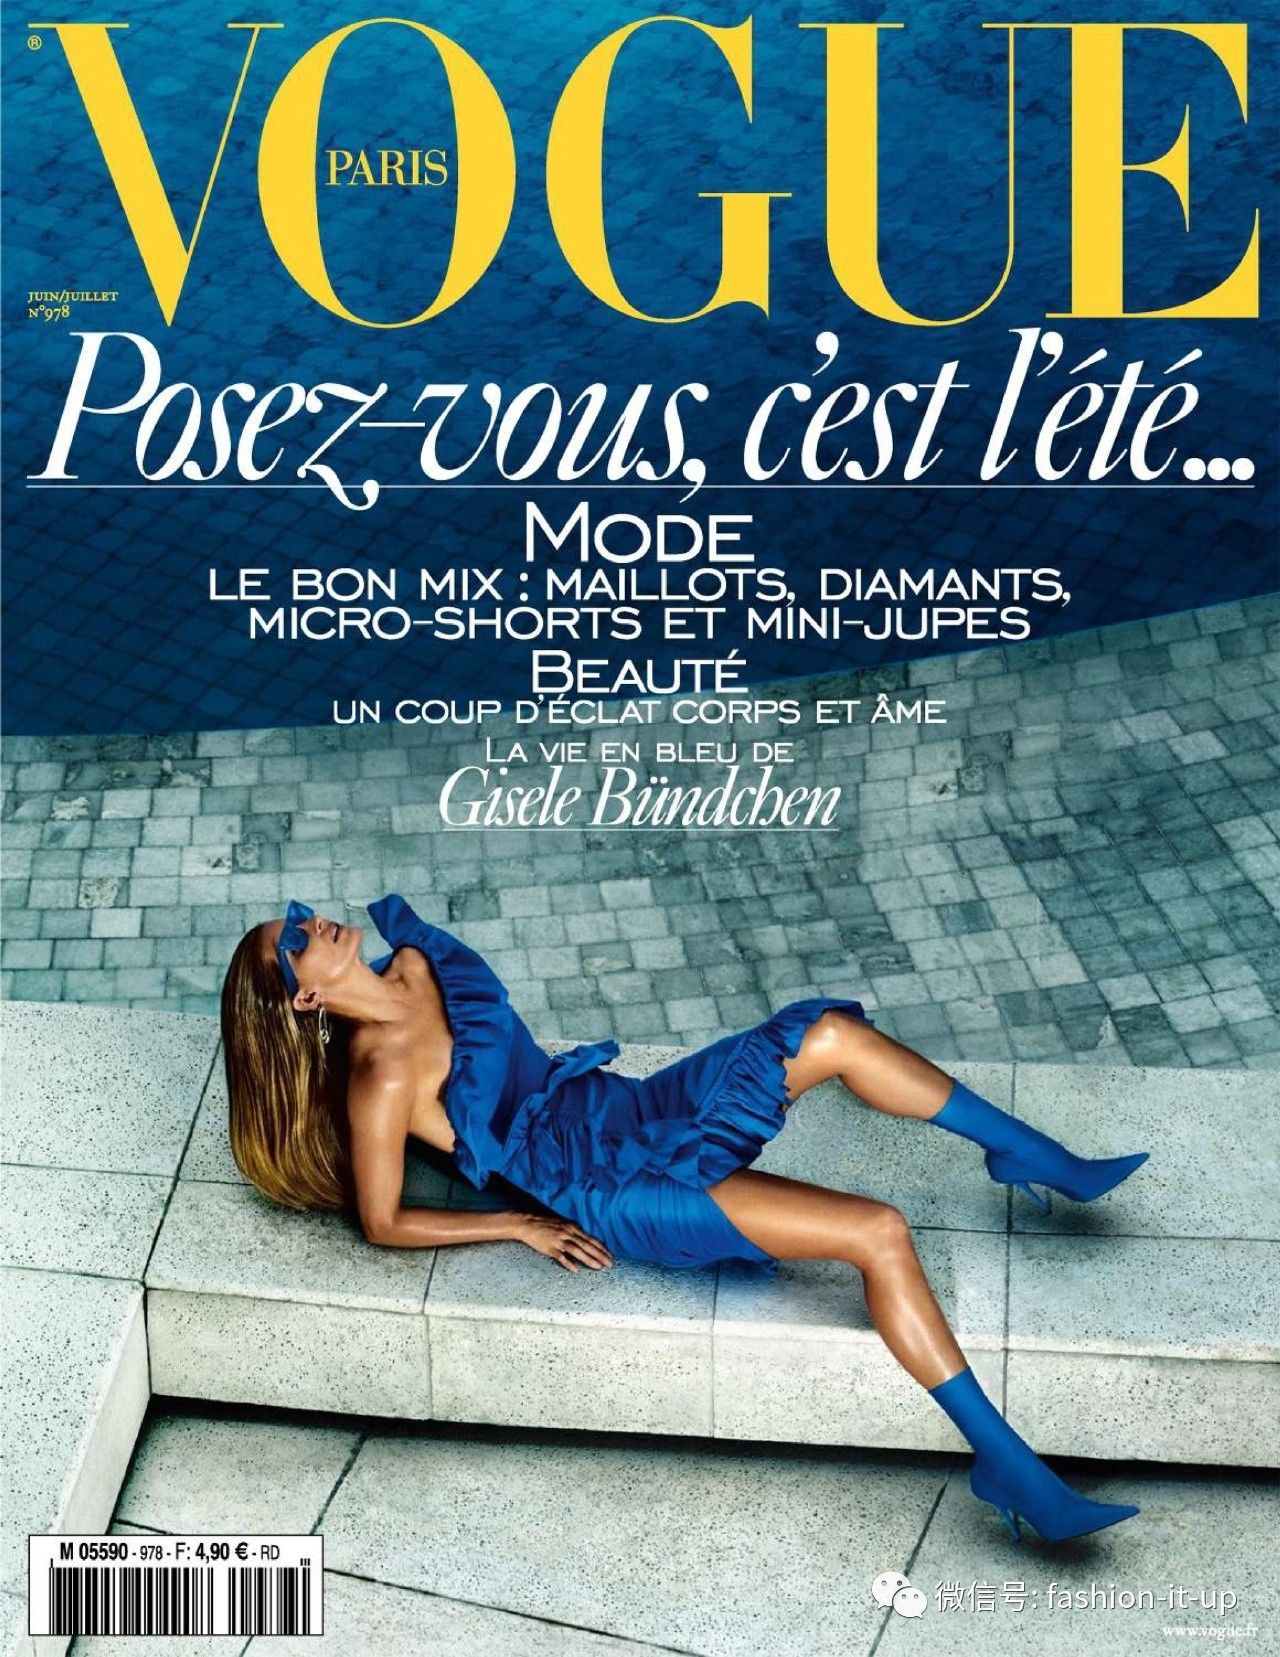 vogue paris 版bella再次登上vi封面,色调和排版都像极了老版杂志的